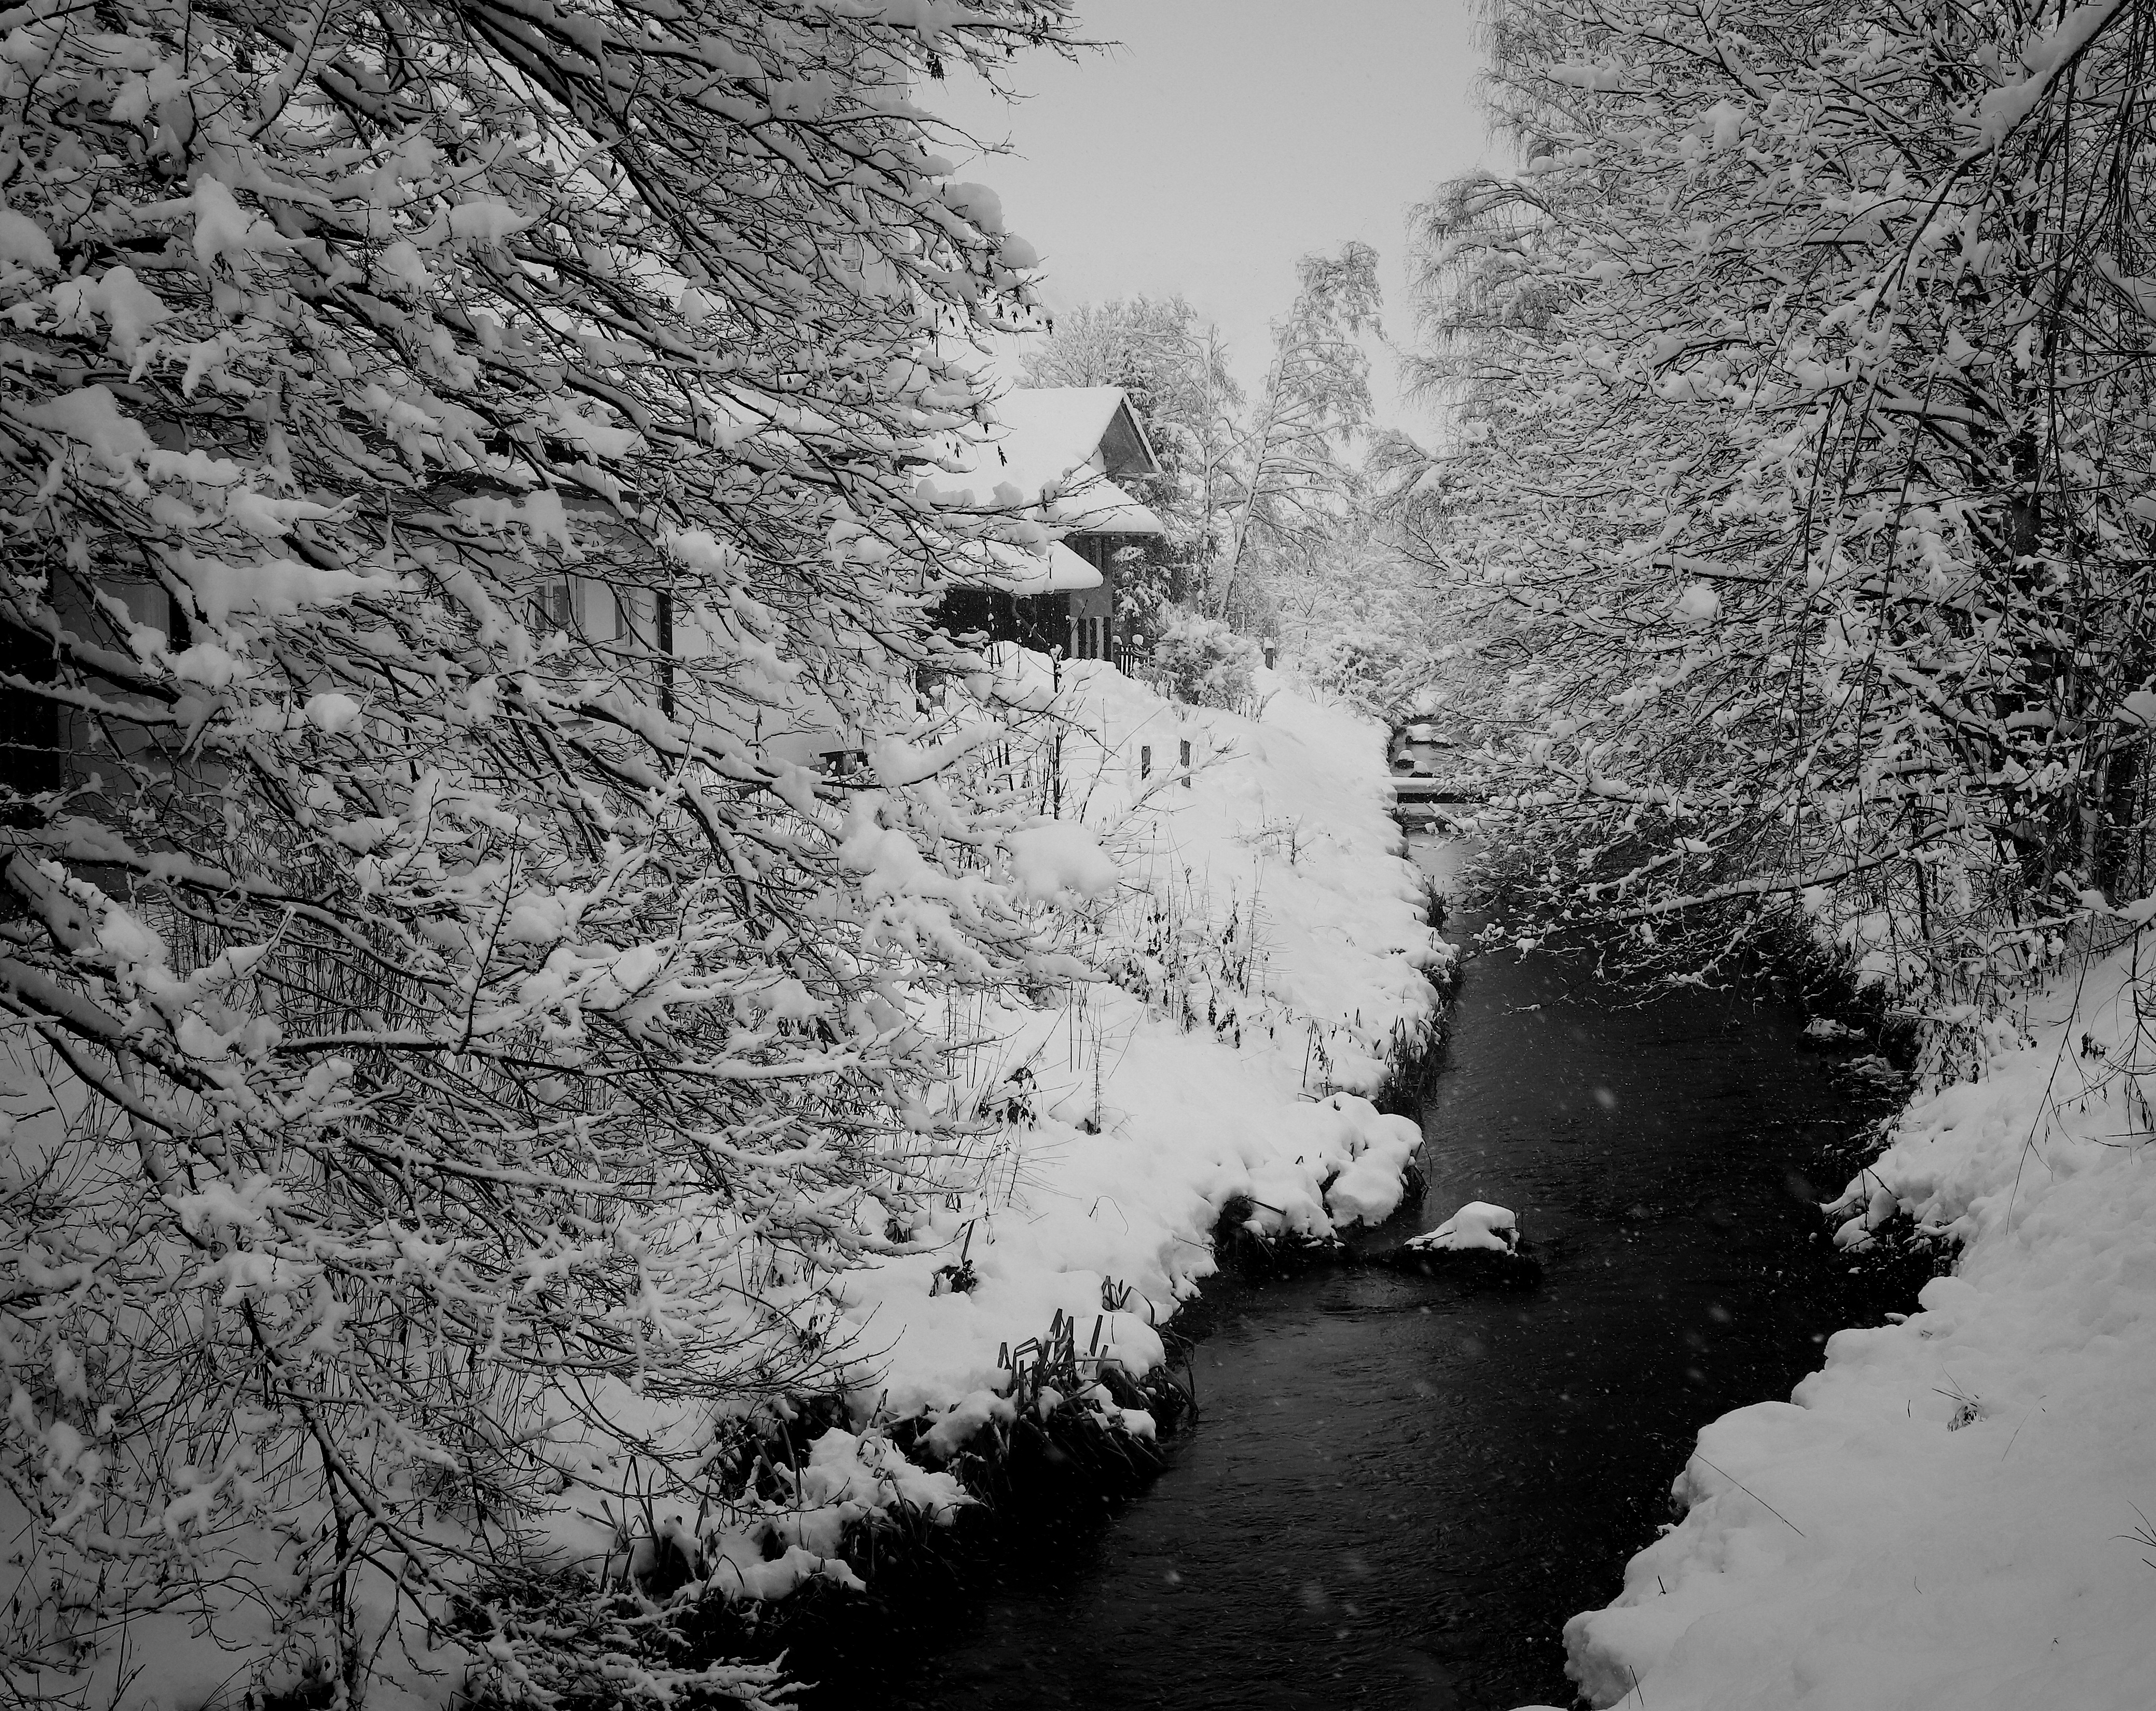 Скачать картинку Зима, Река, Снег, Германия, Фотографии в телефон бесплатно.